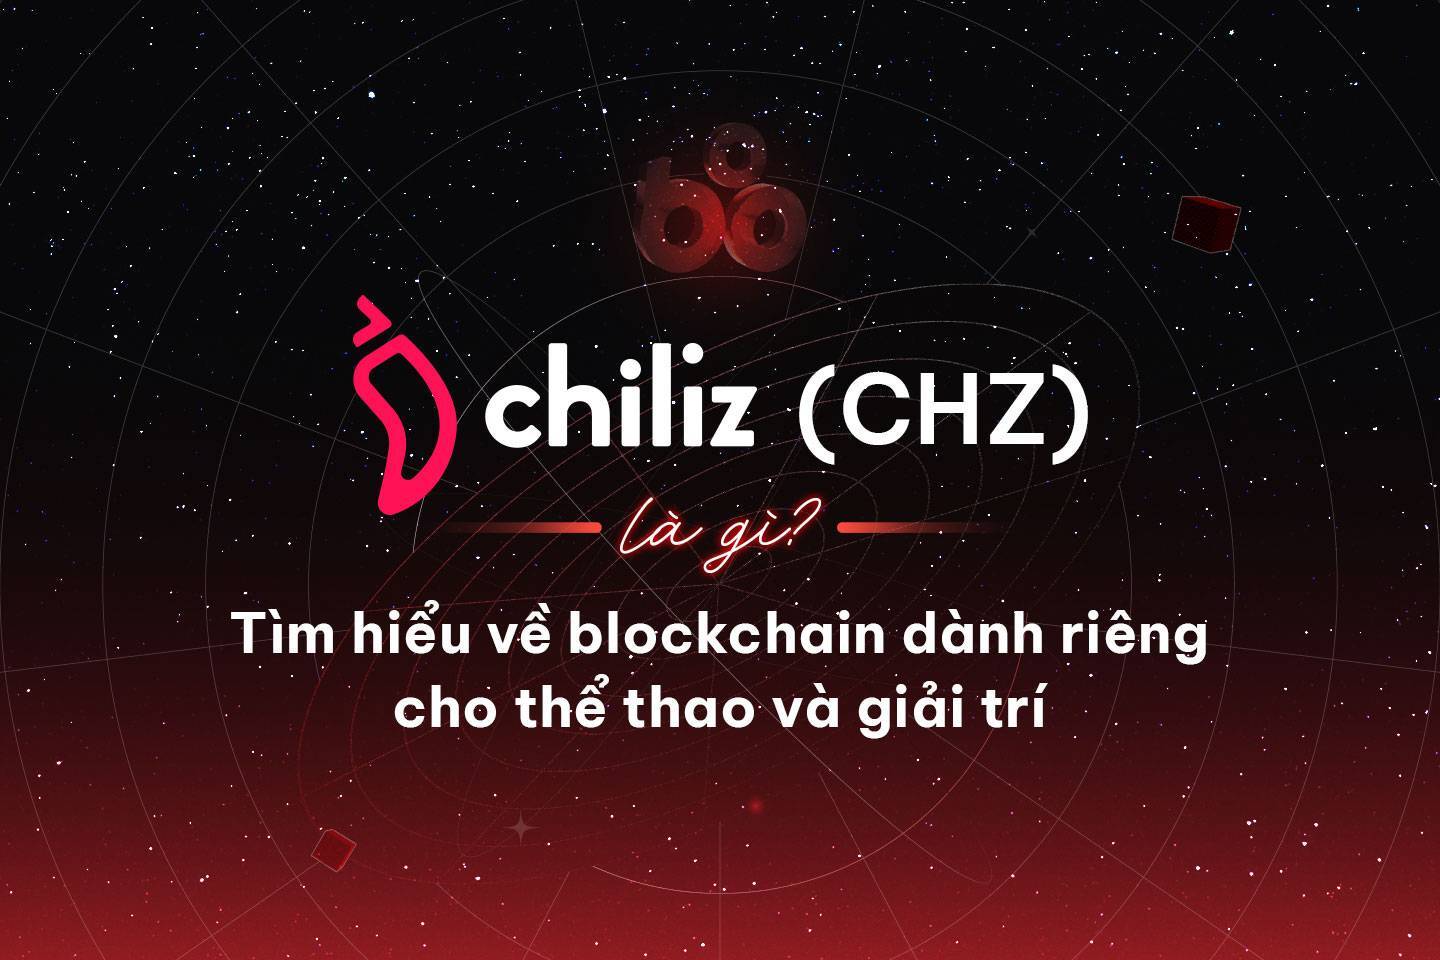 Chiliz chz Là Gì Tìm Hiểu Về Dự Án Blockchain Dành Riêng Cho Thể Thao Và Giải Trí